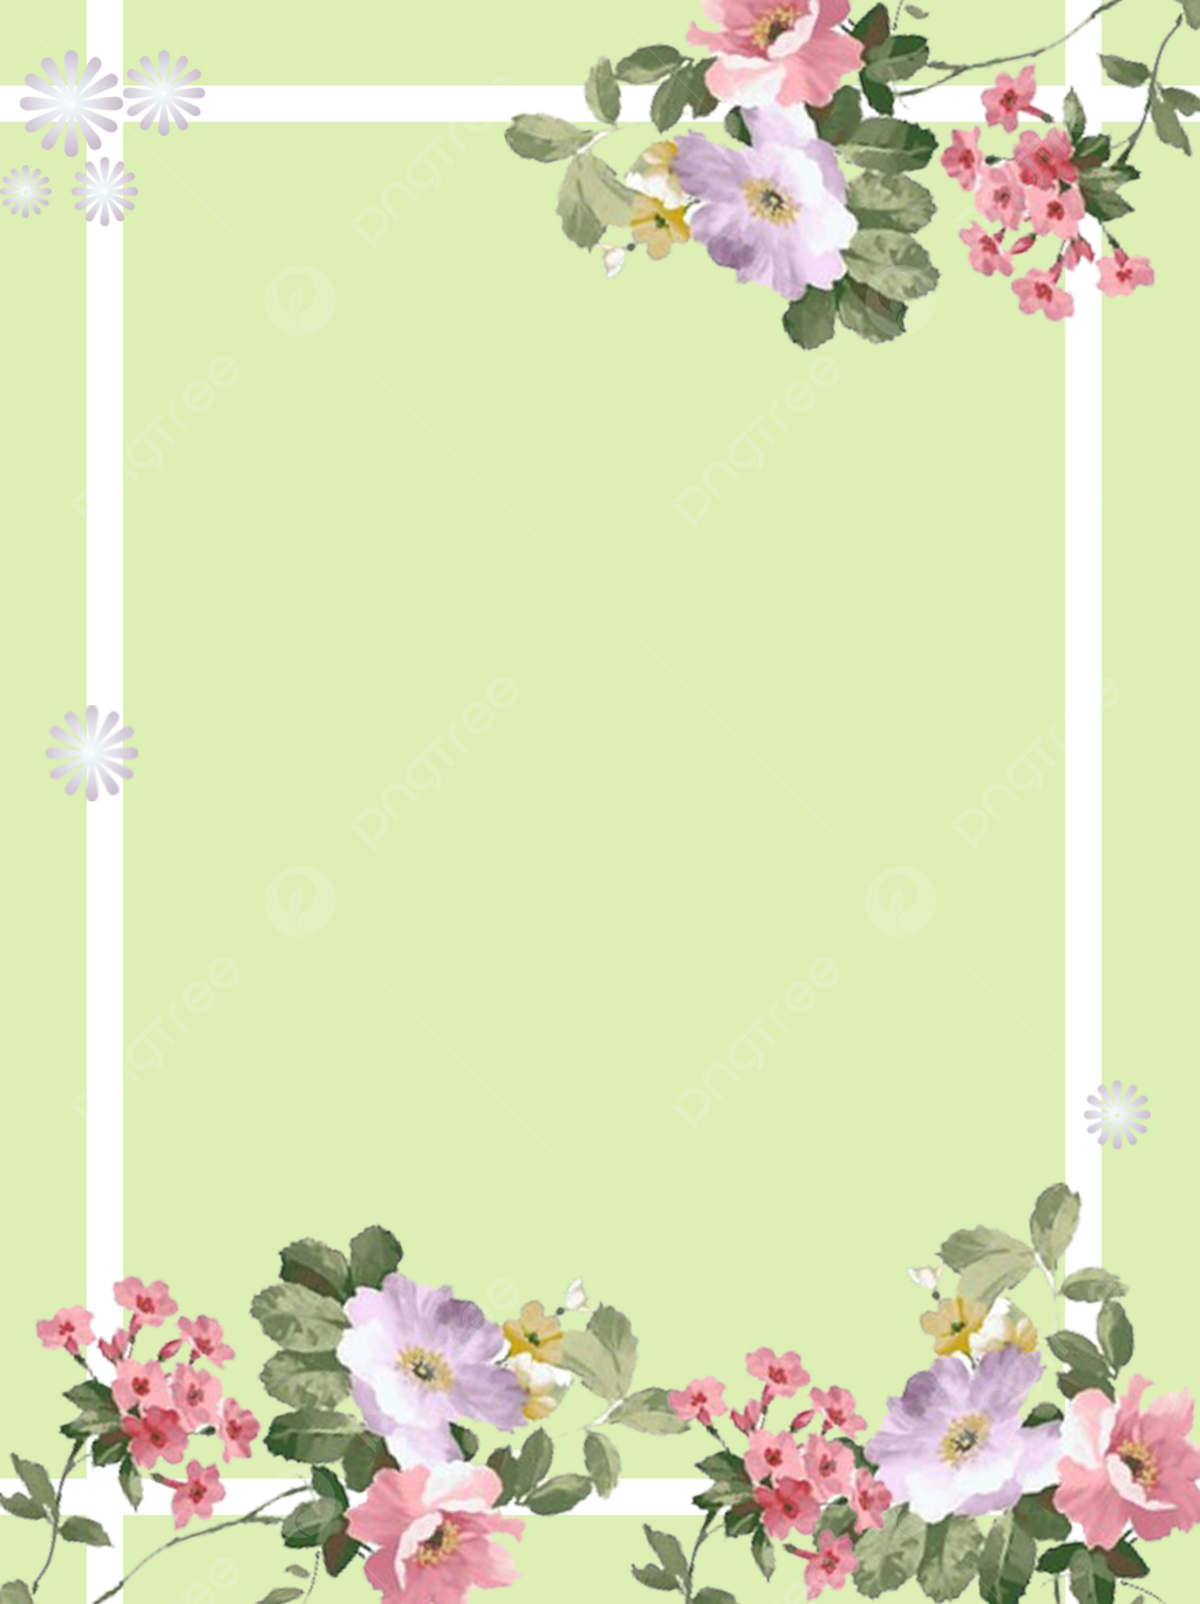 Light Floral Background